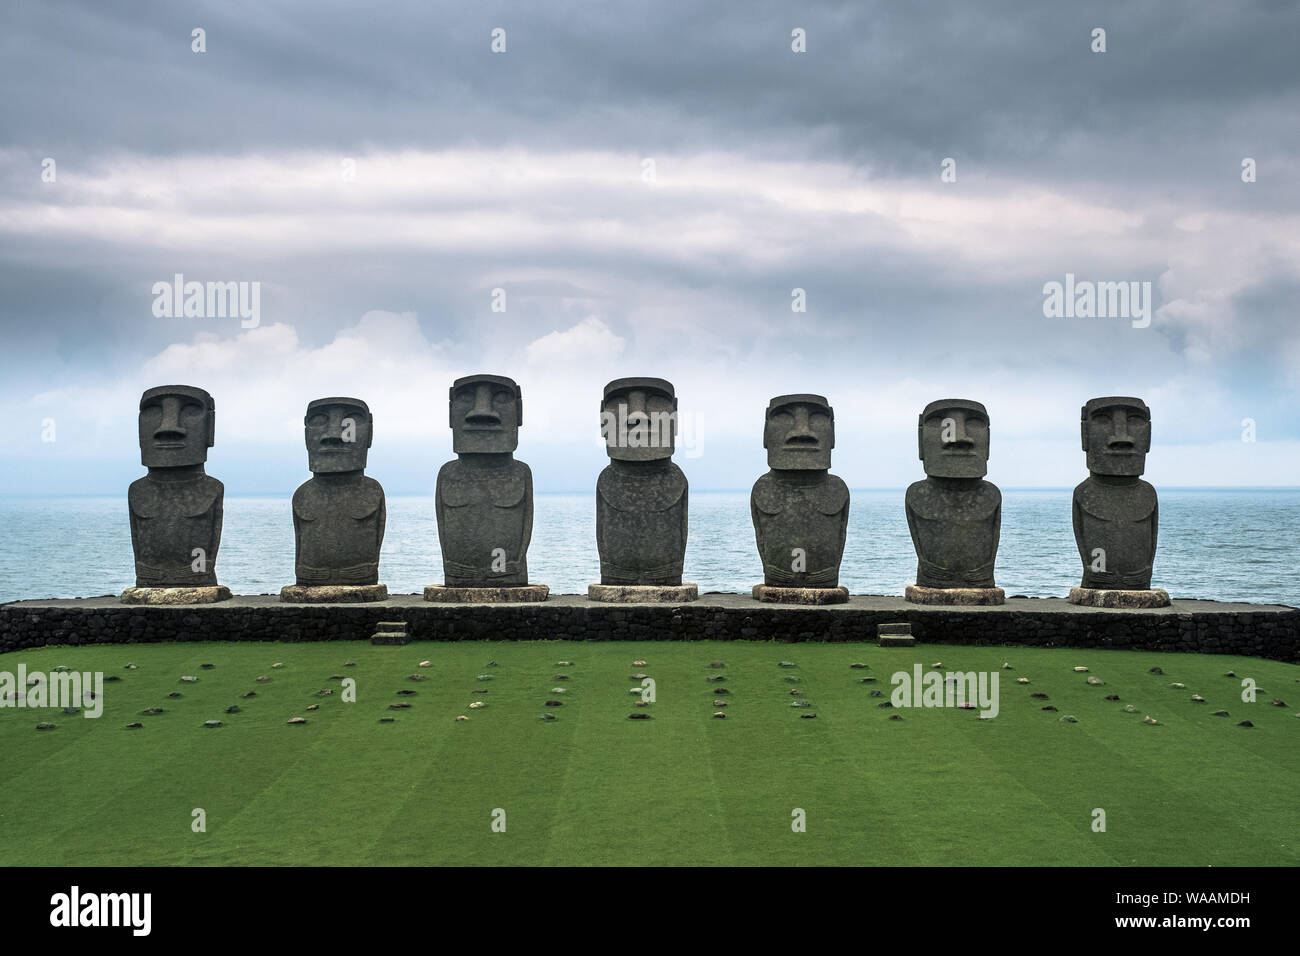 Les sept statues Moai de l'île de Pâques replica Sun à Nichinan Messe dans la préfecture de Miyazaki avec l'océan Pacifique à l'arrière-plan, Kyushu, Japon Banque D'Images